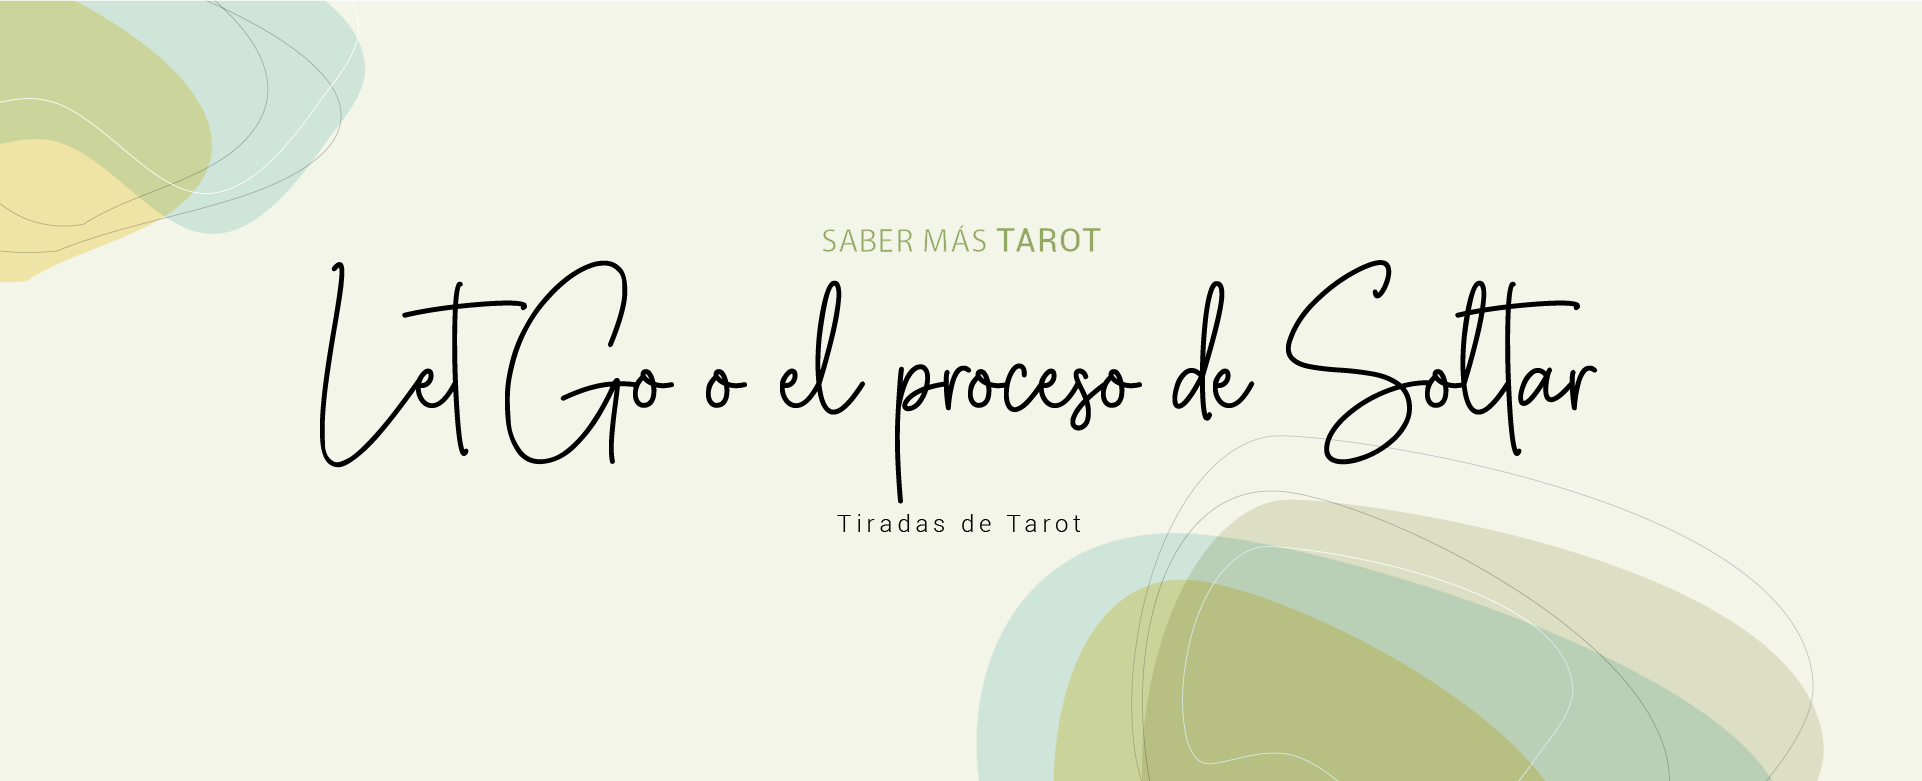 Let Go o el proceso de SOLTAR - Encabezado